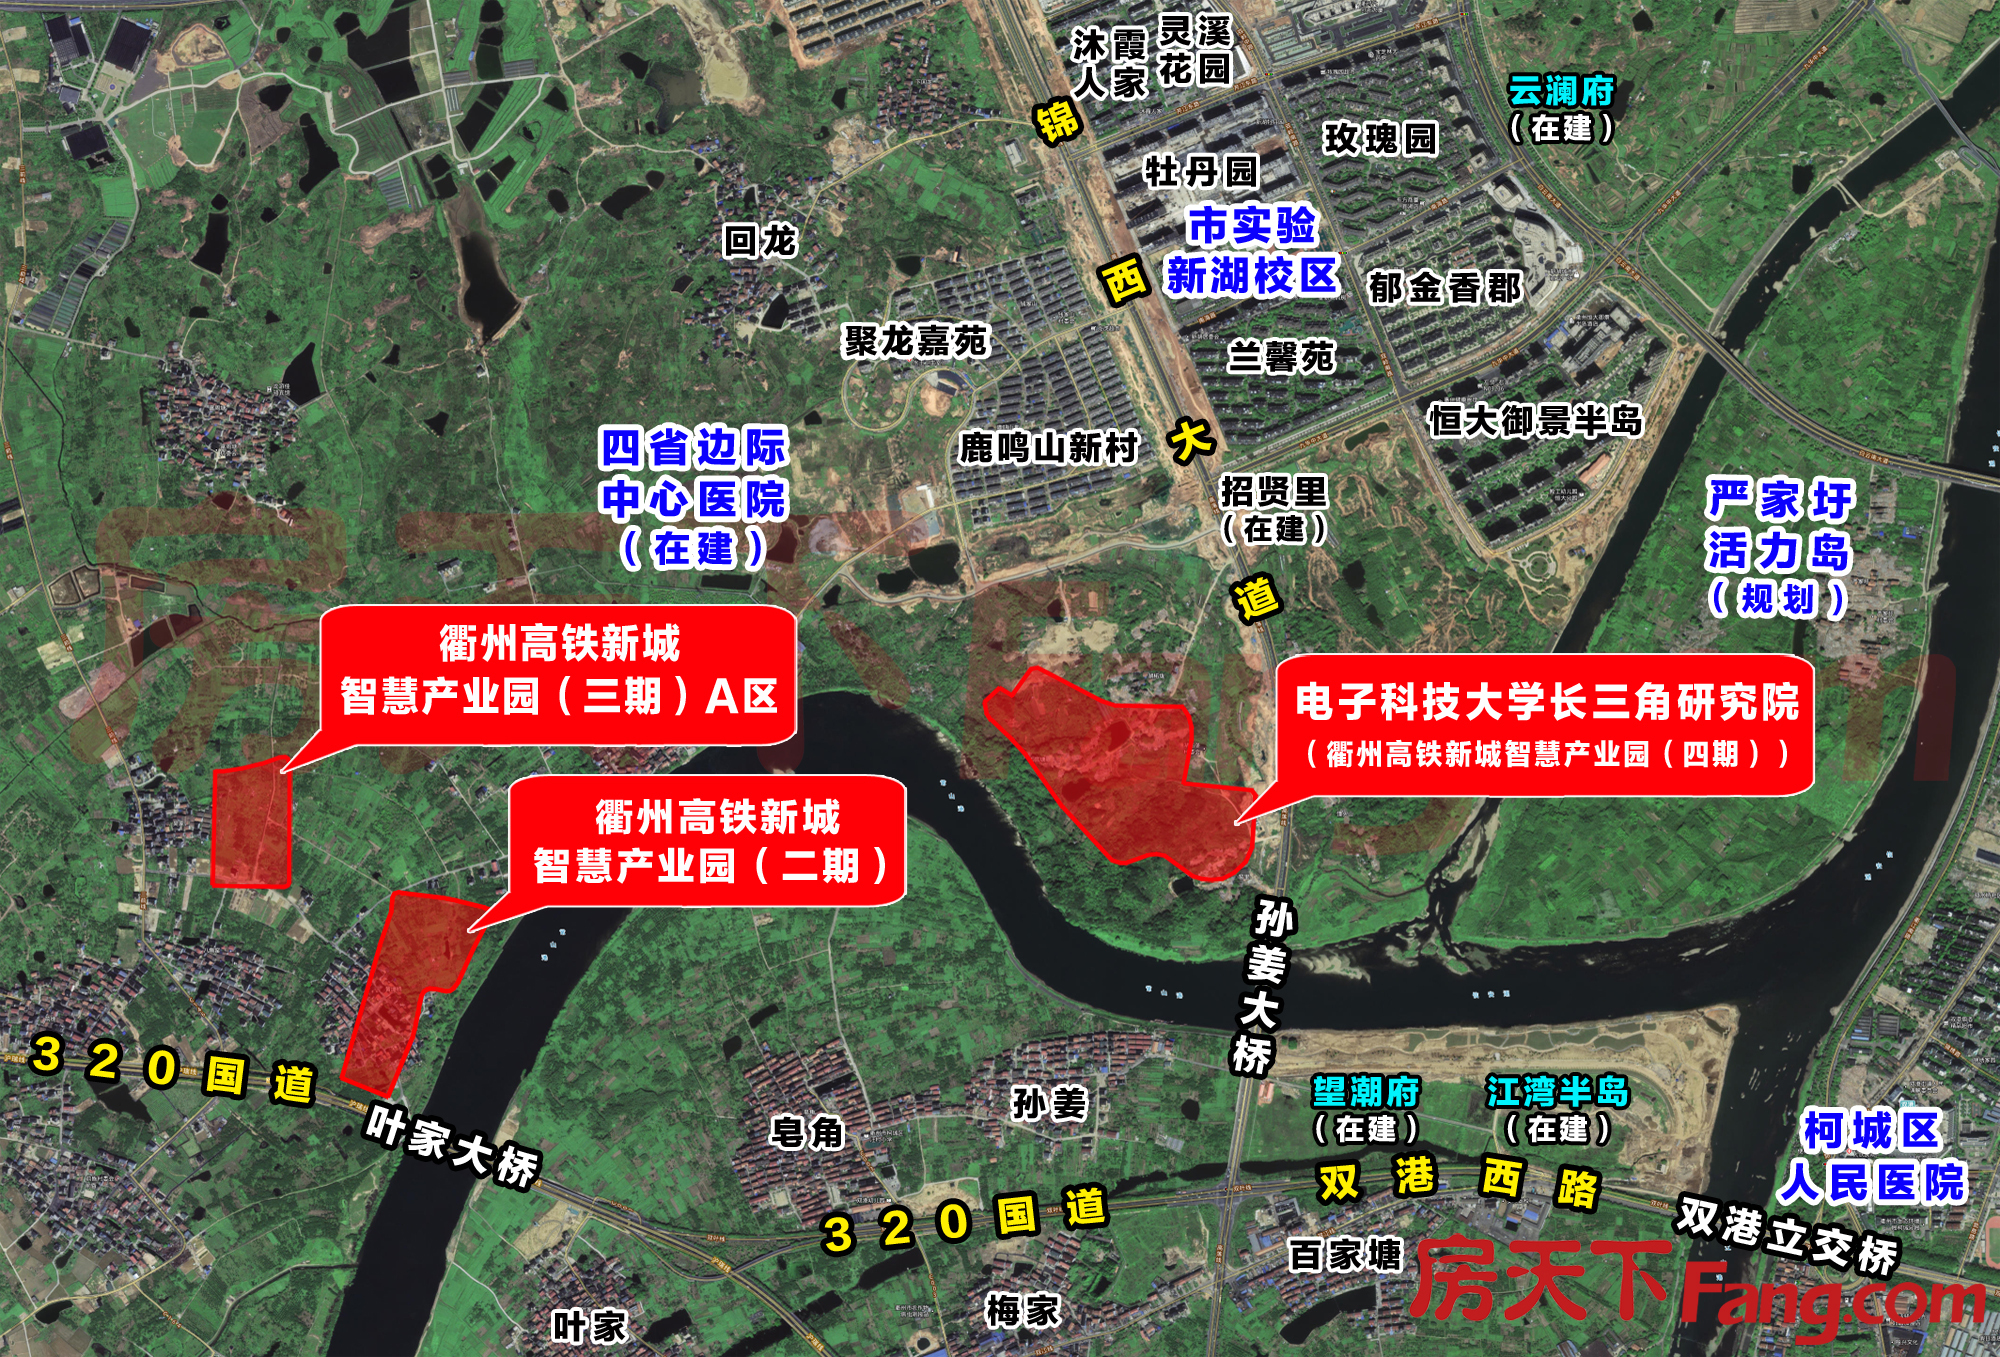 衢州高铁新城智慧产业园地块拍卖 将建设电子科技大学长三角研究院